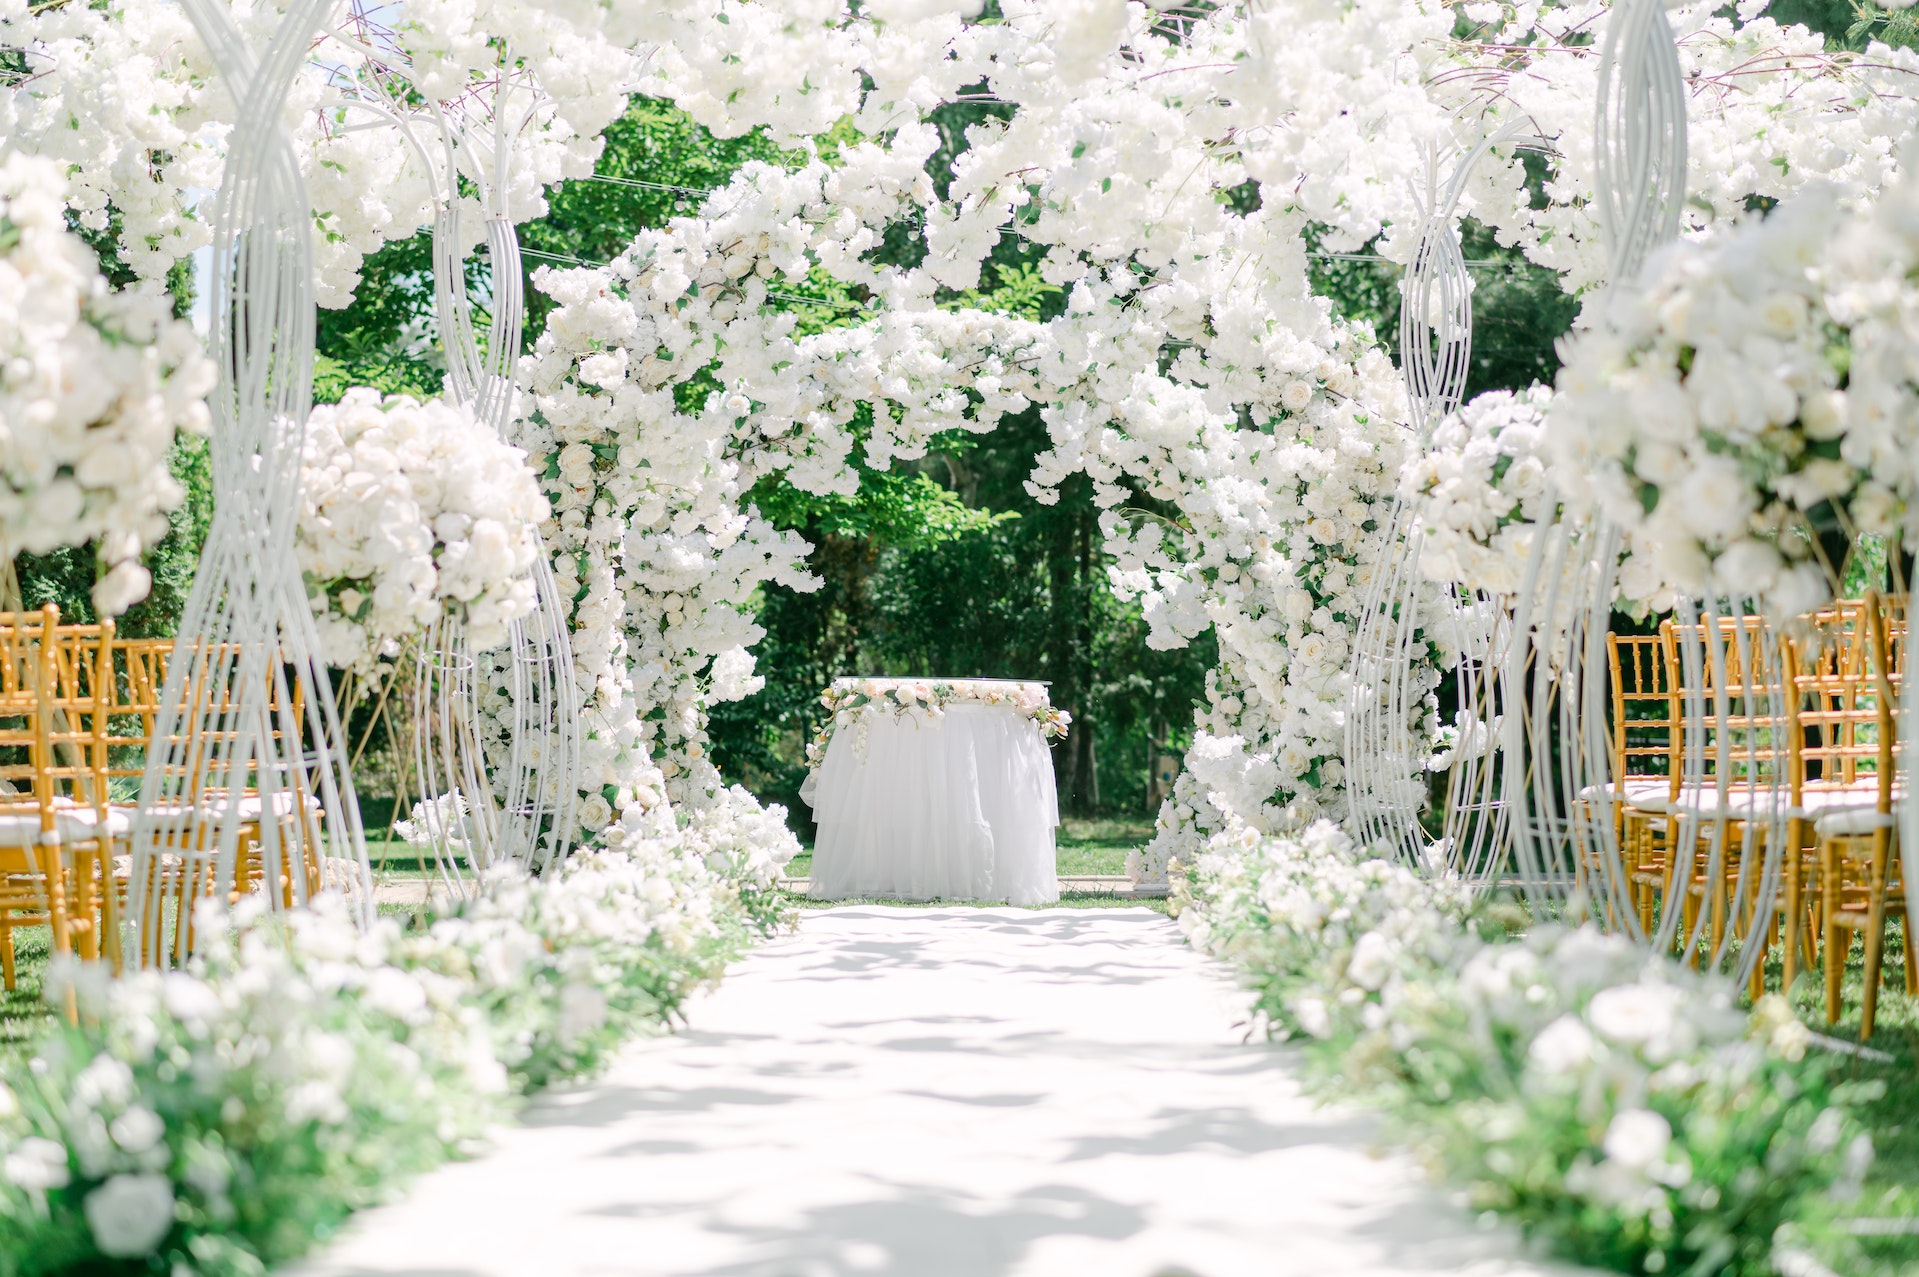 Eine mit Blumen geschmückte Hochzeitslocation | Quelle: Pexels